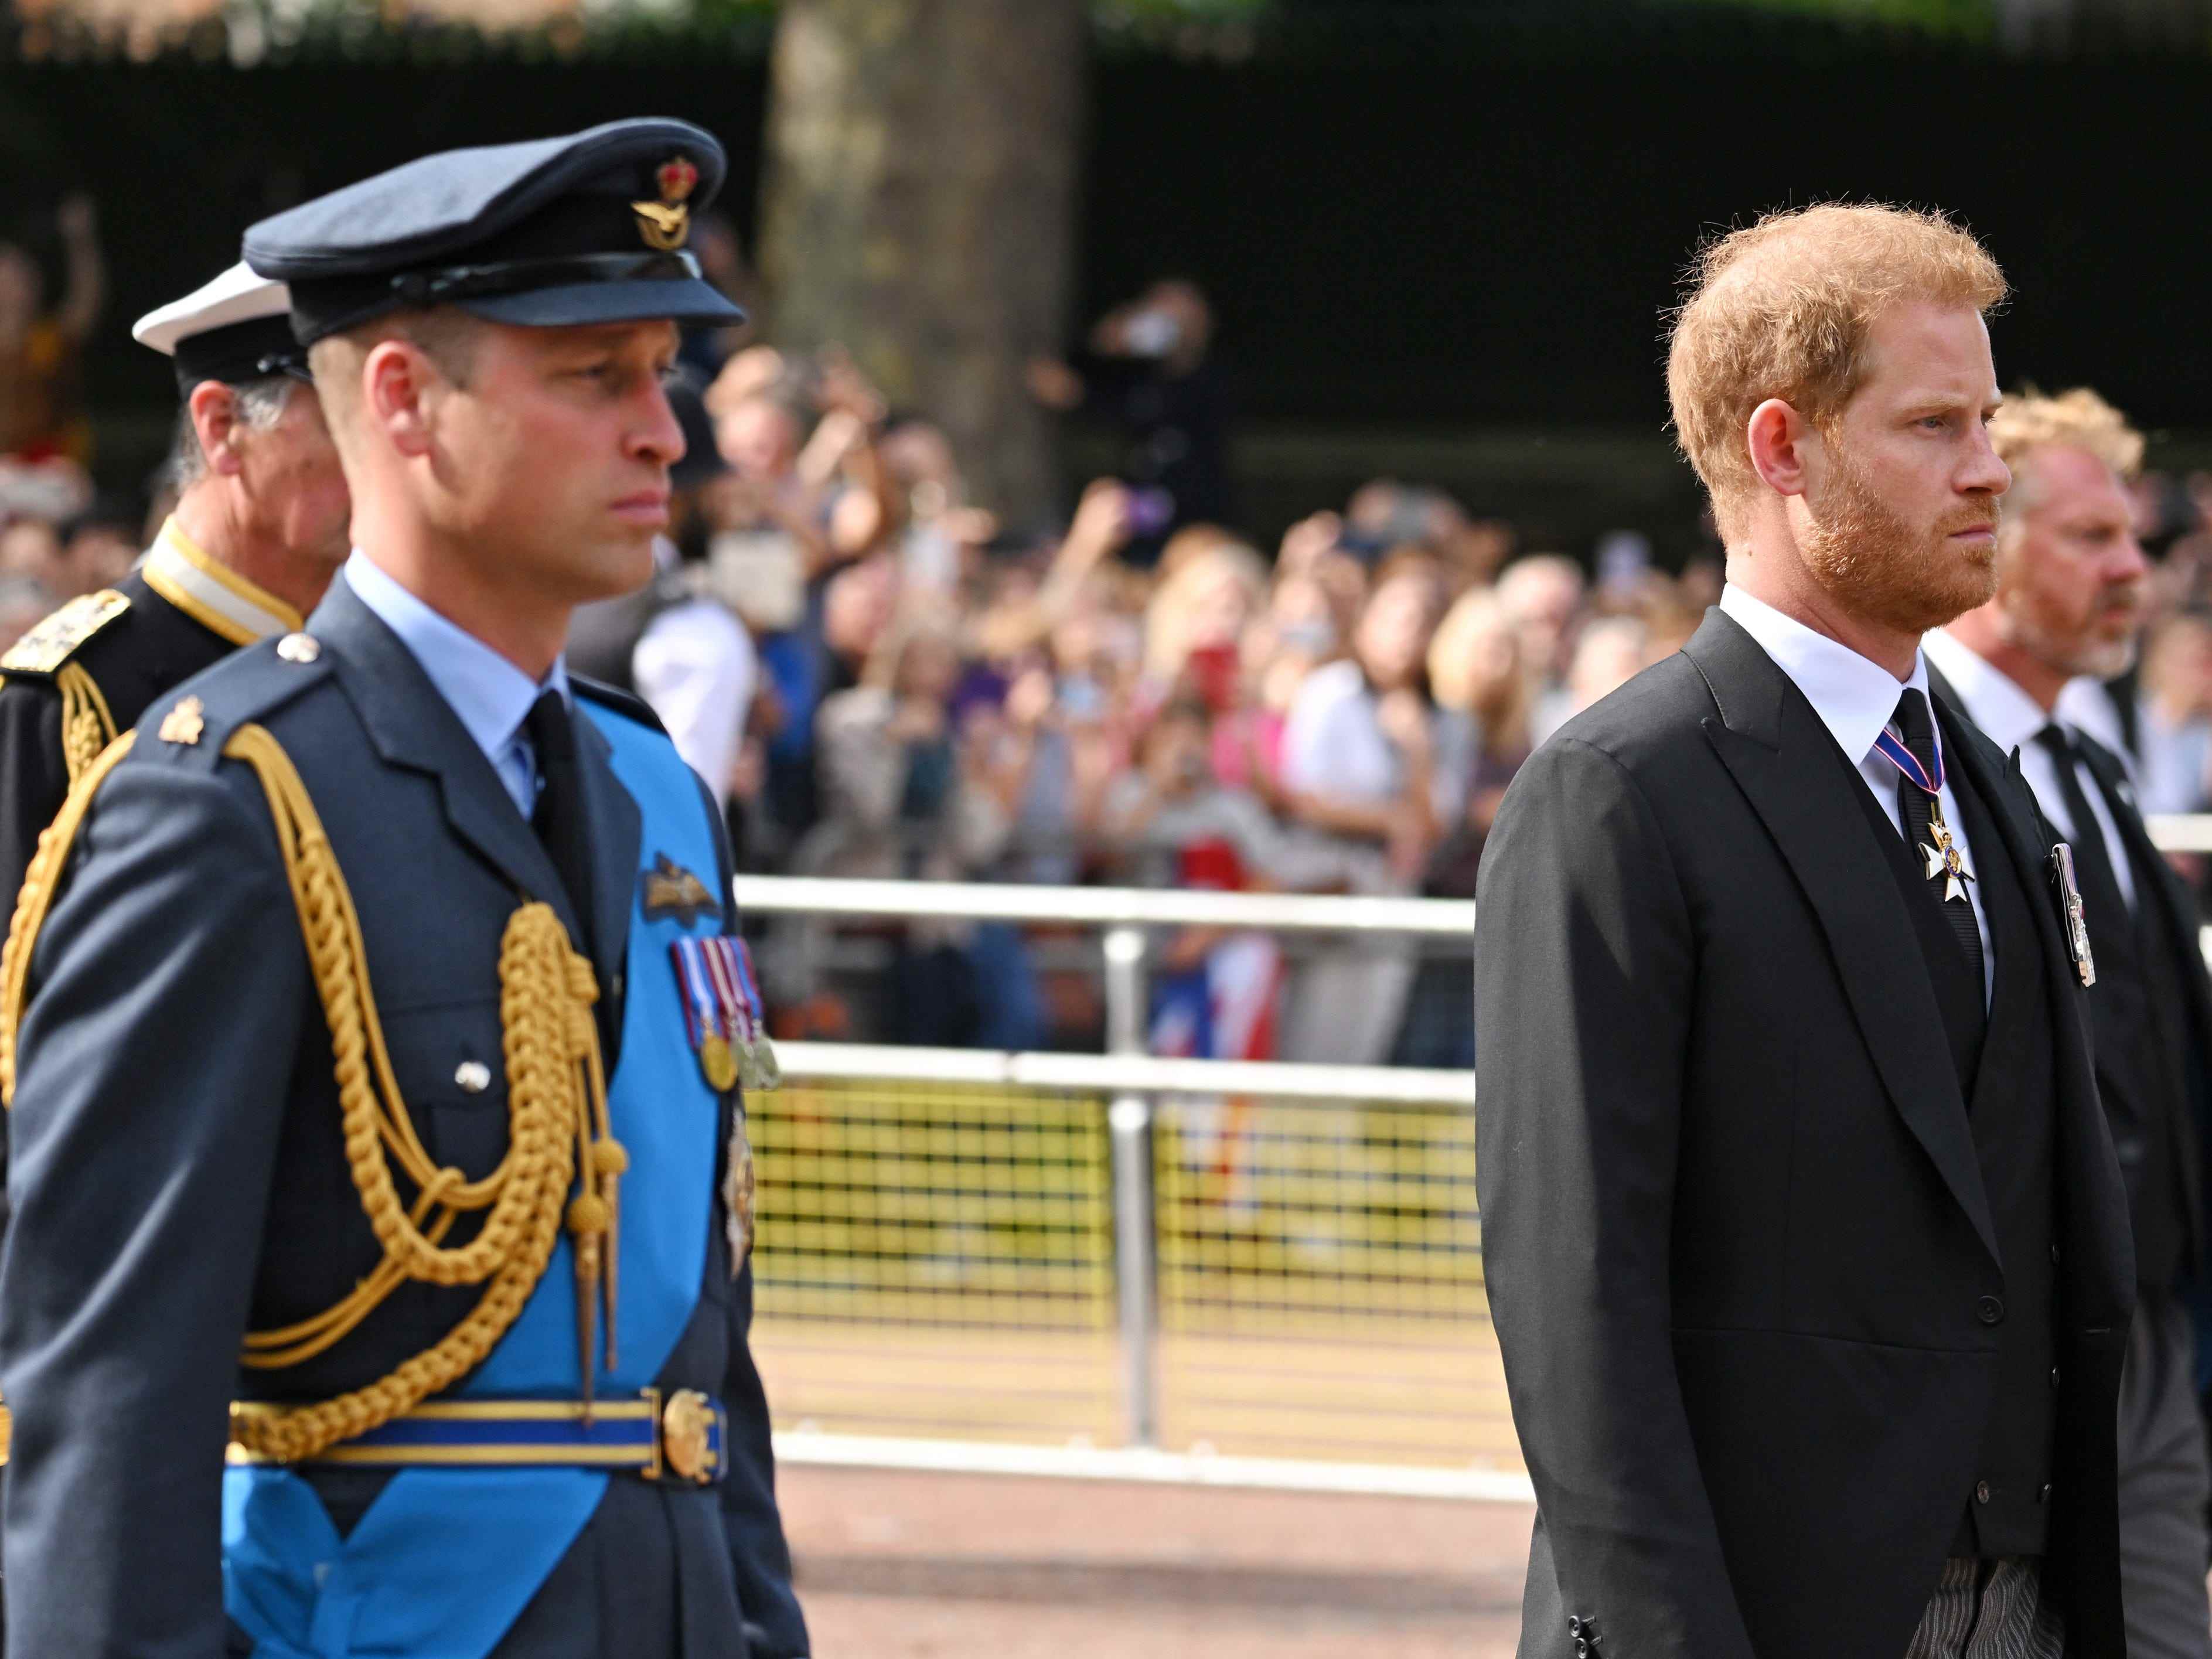 Prinz William, Prinz von Wales, und Prinz Harry, Herzog von Sussex, gehen während der Prozession für den Liegenden Staat von Königin Elizabeth II. Hinter dem Sarg.